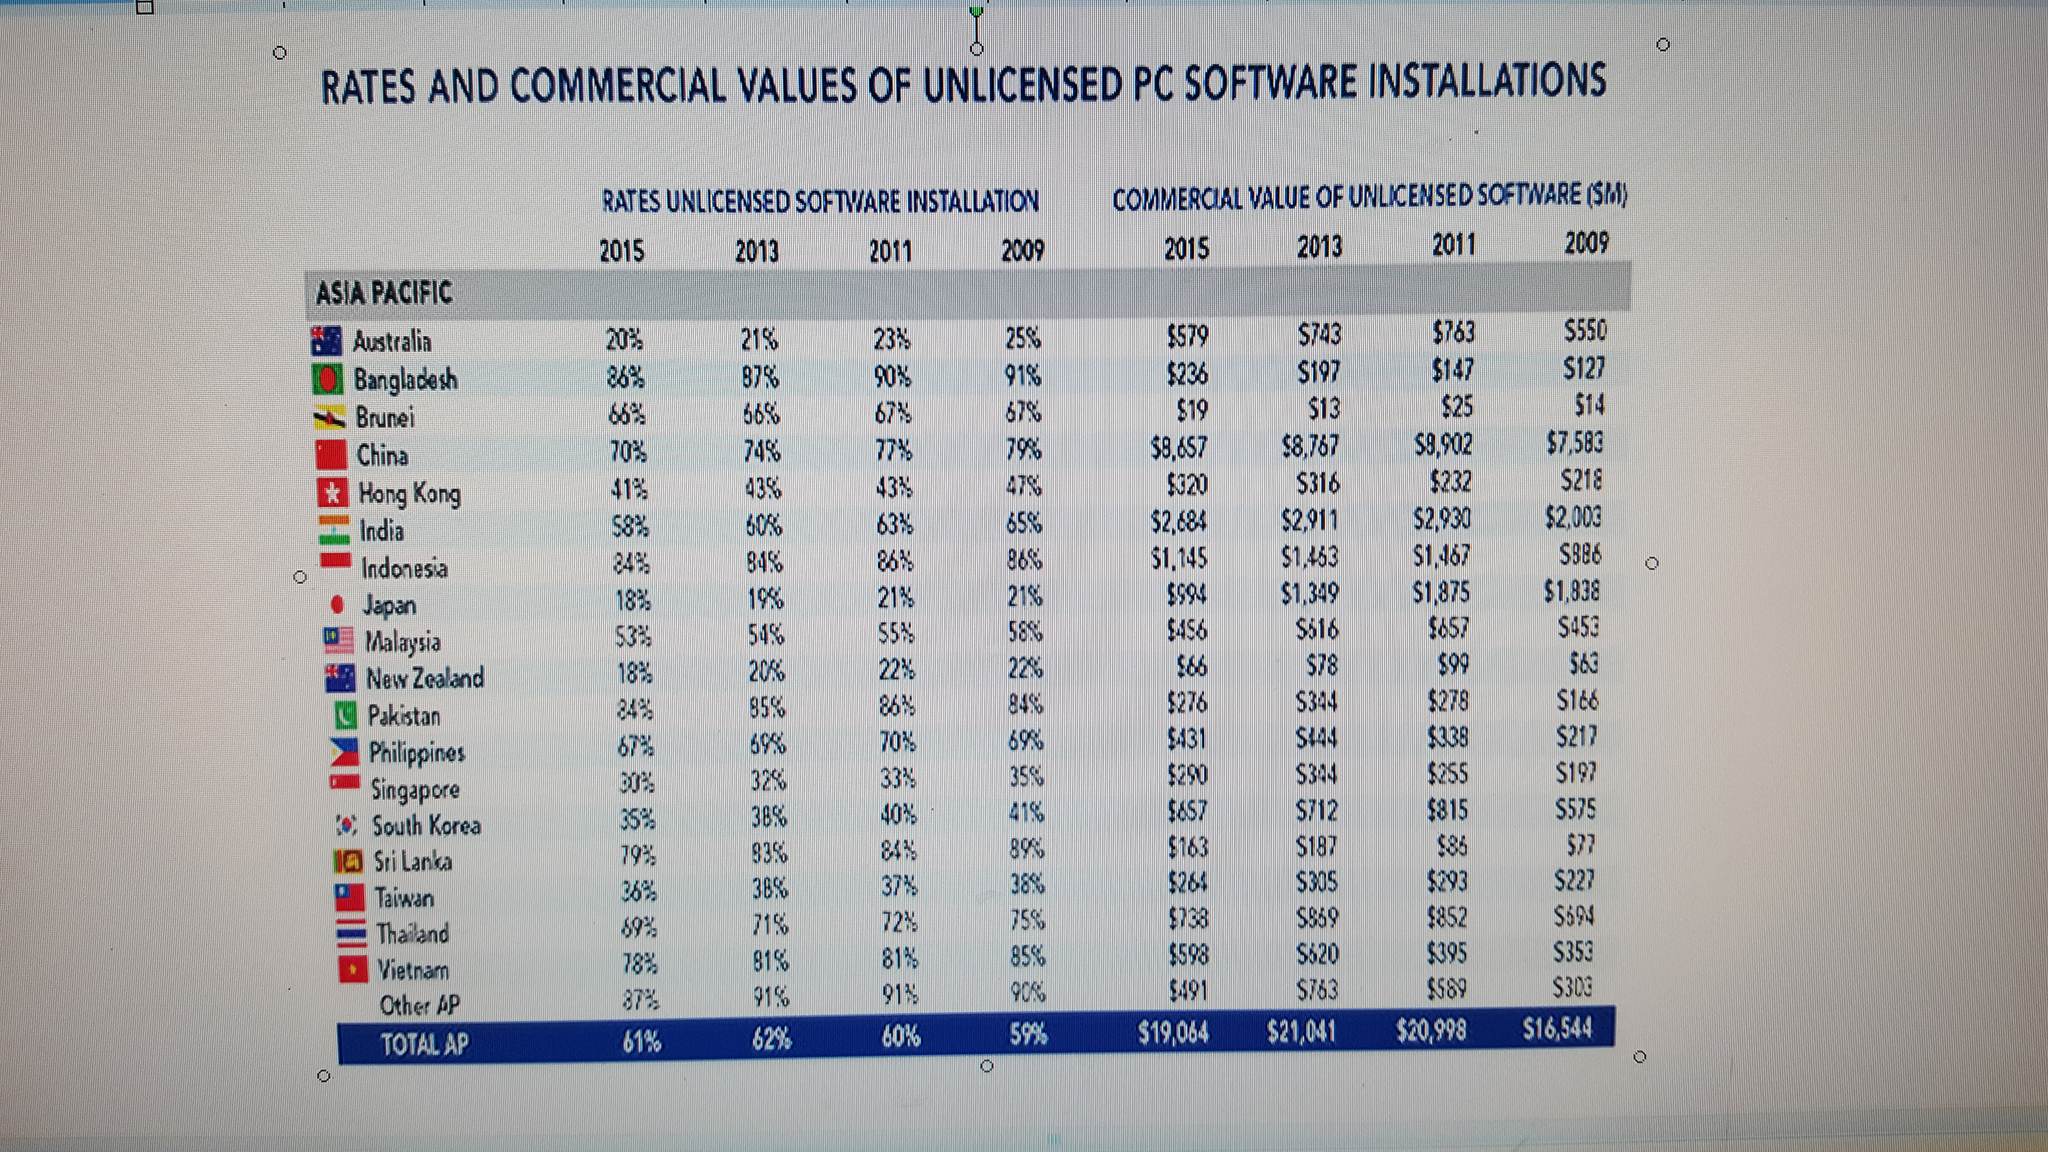 tỷ lệ sử dụng phần mềm máy tính không bản quyền ở Việt Nam năm 2015 là 78%